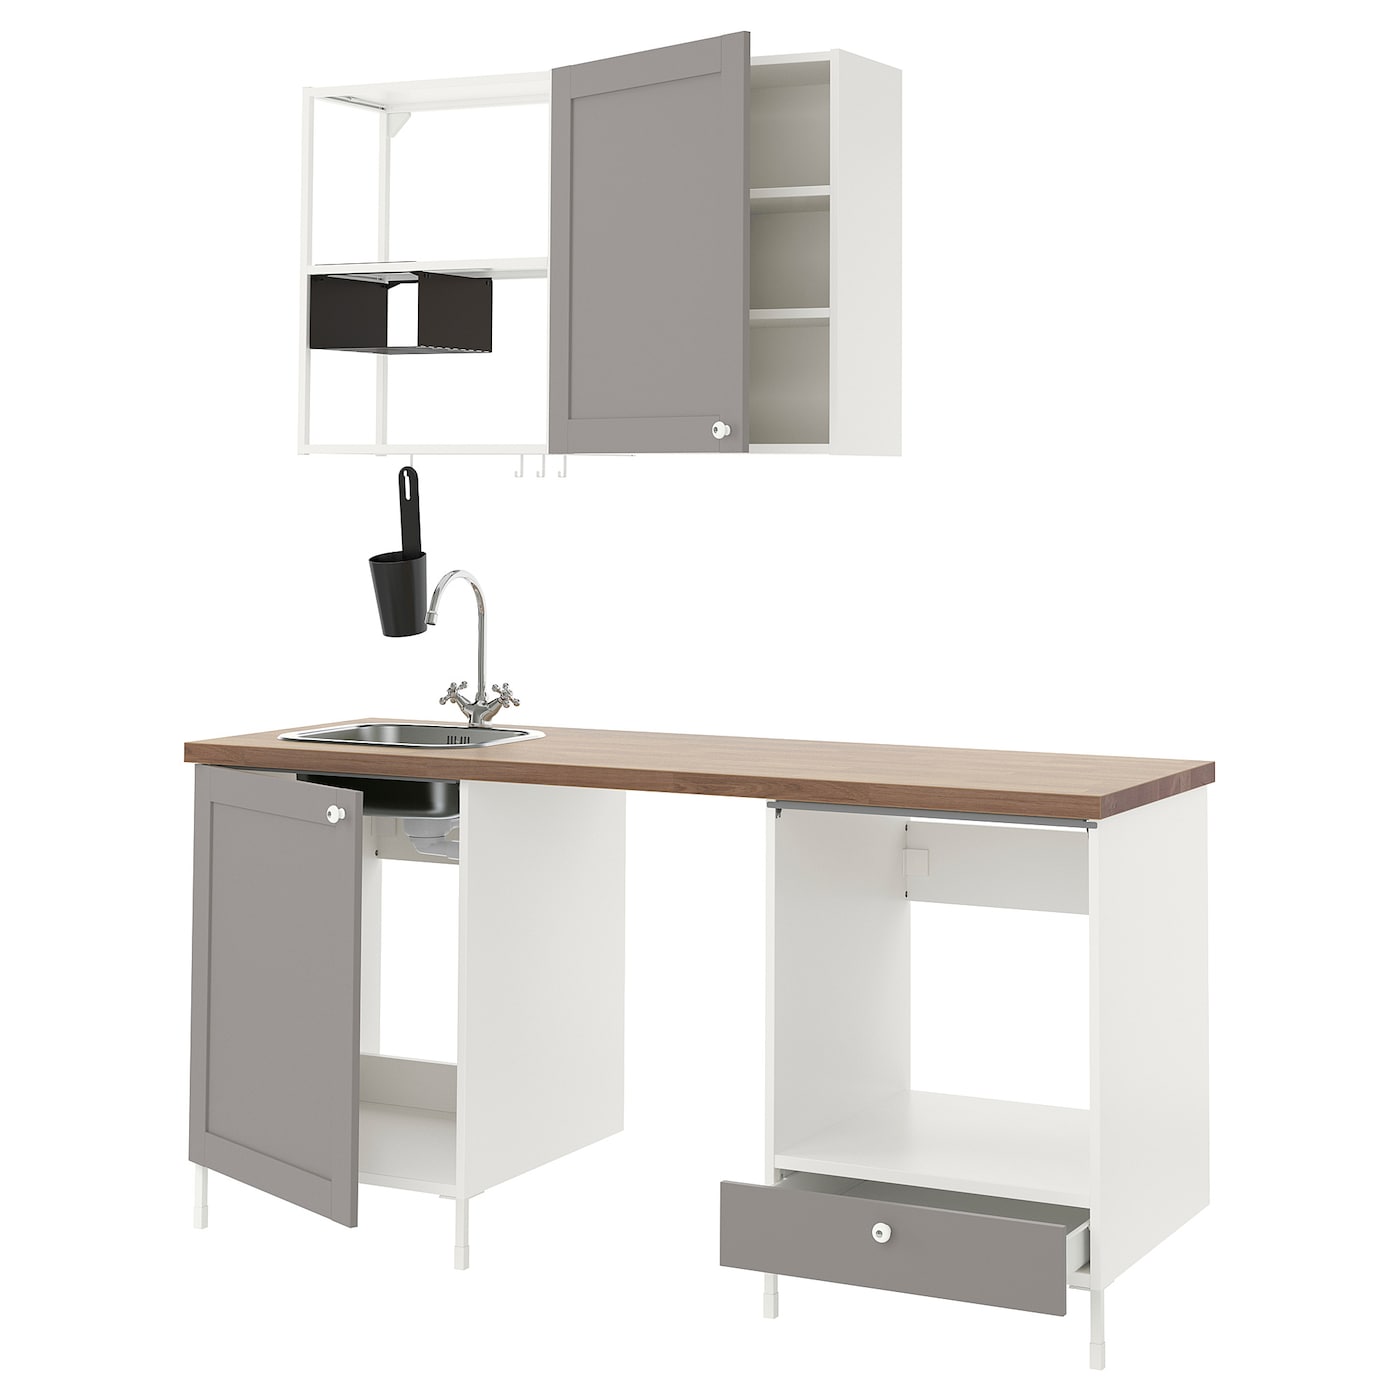 Комбинация для кухонного хранения  - ENHET  IKEA/ ЭНХЕТ ИКЕА, 183x63,5x222 см, белый/серый/бежевый